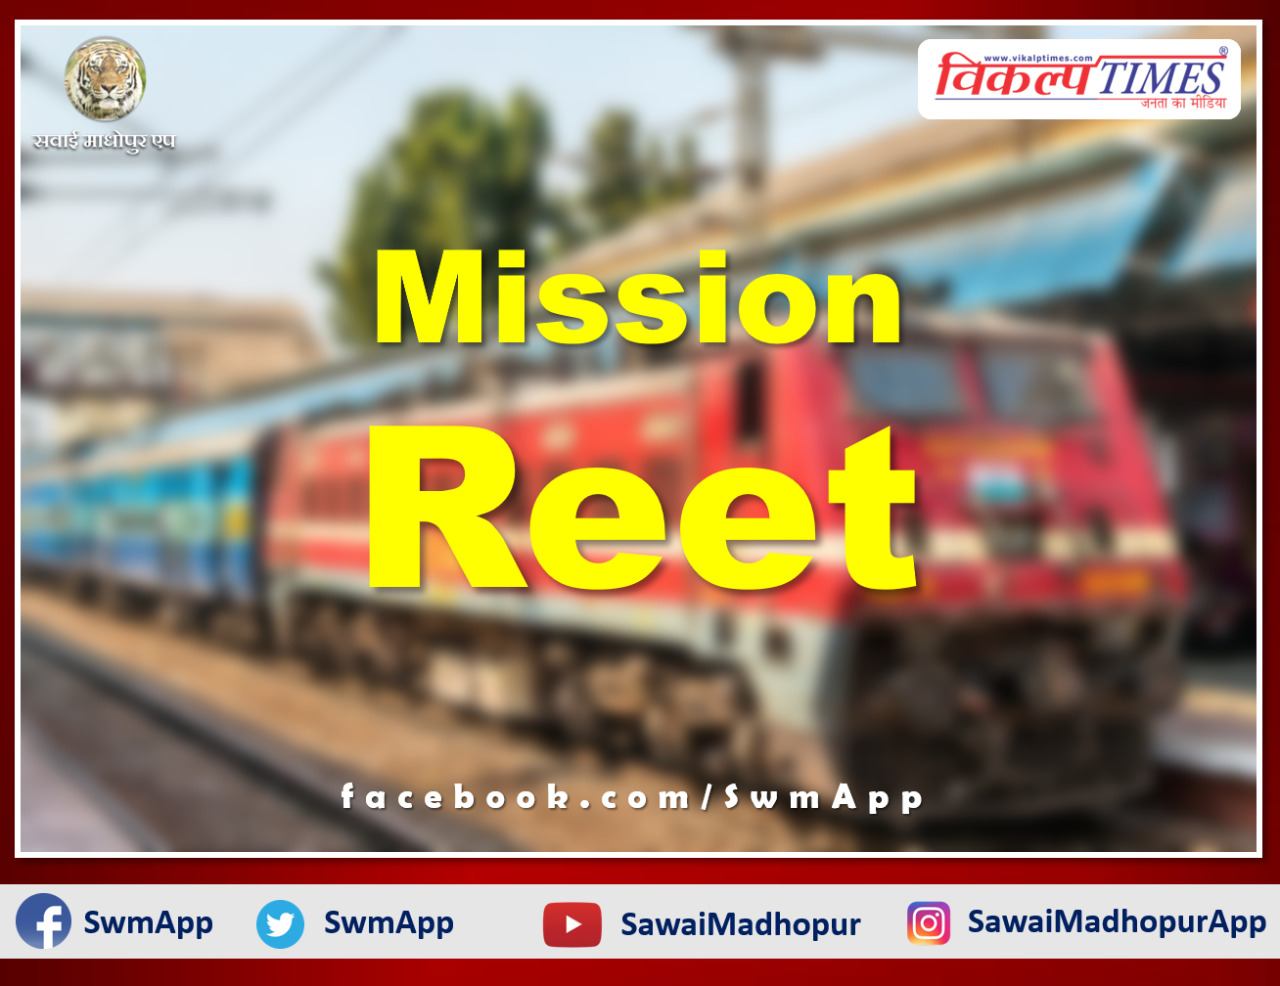 Exam special train will run between Bhopal-Ajmer-Bhopal